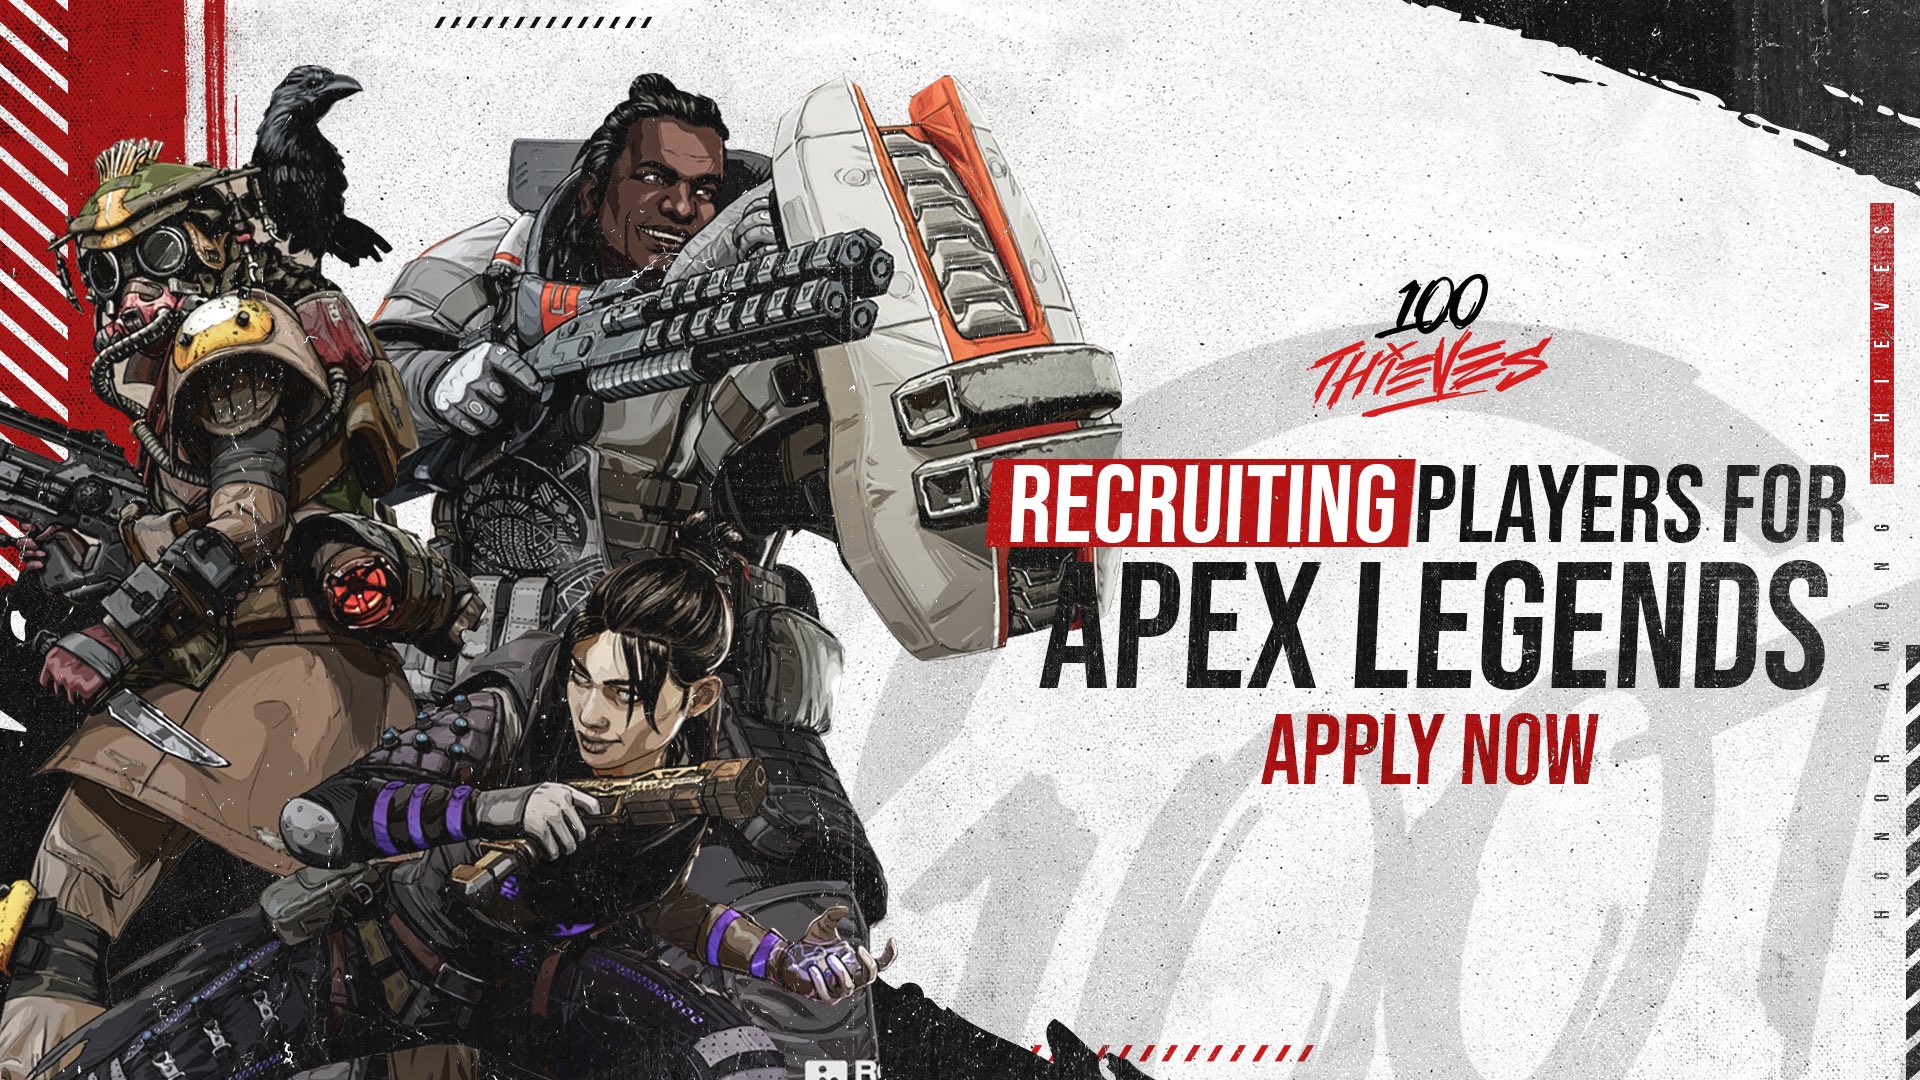 Apex Legends' surpasses 100M players